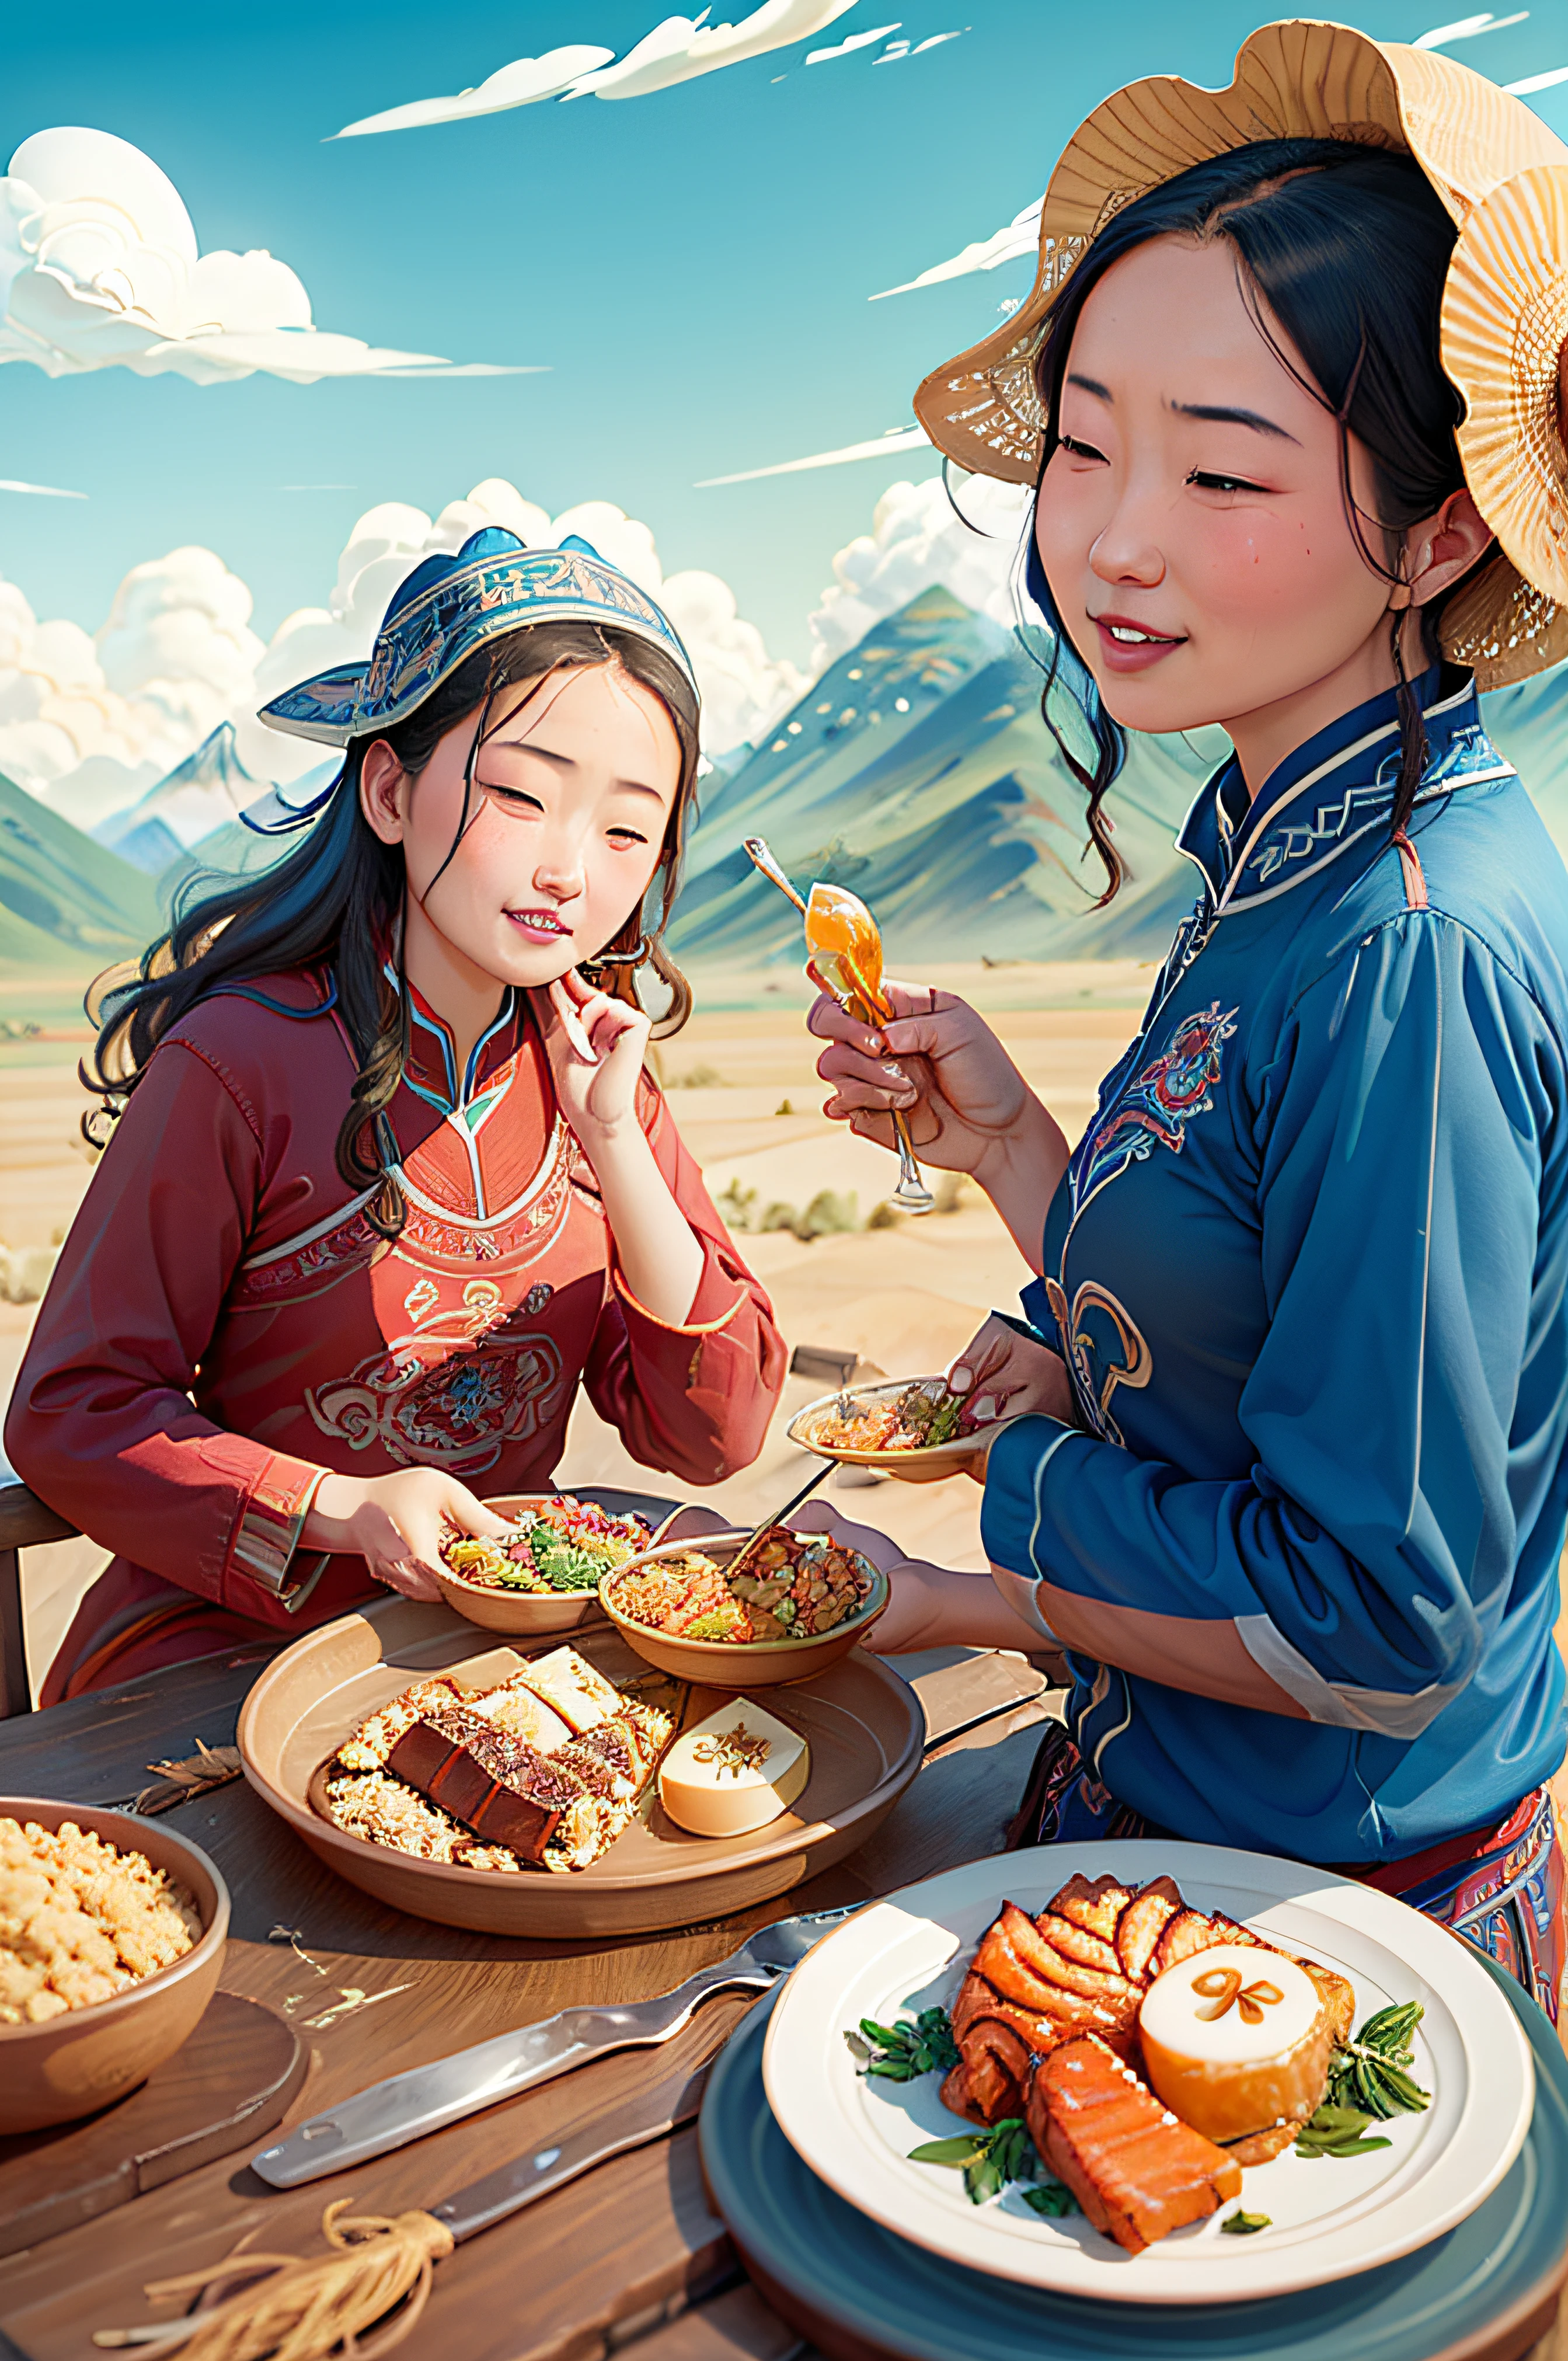 สาวมองโกเลียกินอาหารอย่างมีความสุขในทุ่งหญ้าสเตปป์，ข้างๆมีฝูงแกะ，ด้วยท้องฟ้าสีครามและเมฆสีขาว